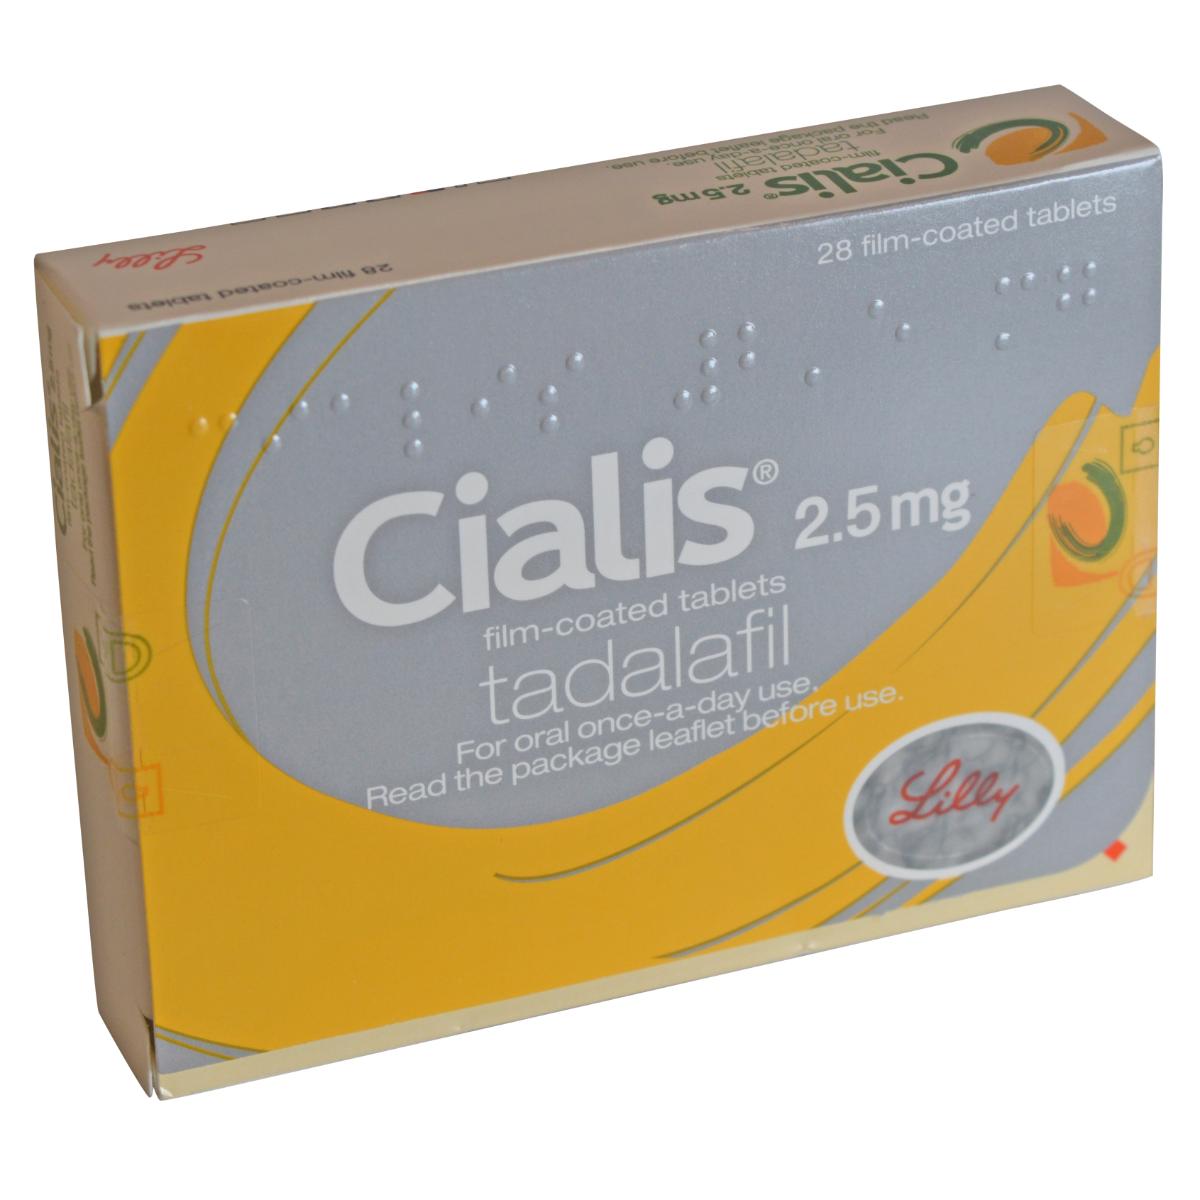 CIALIS (tadalafil) TAB 2.5MG (28)